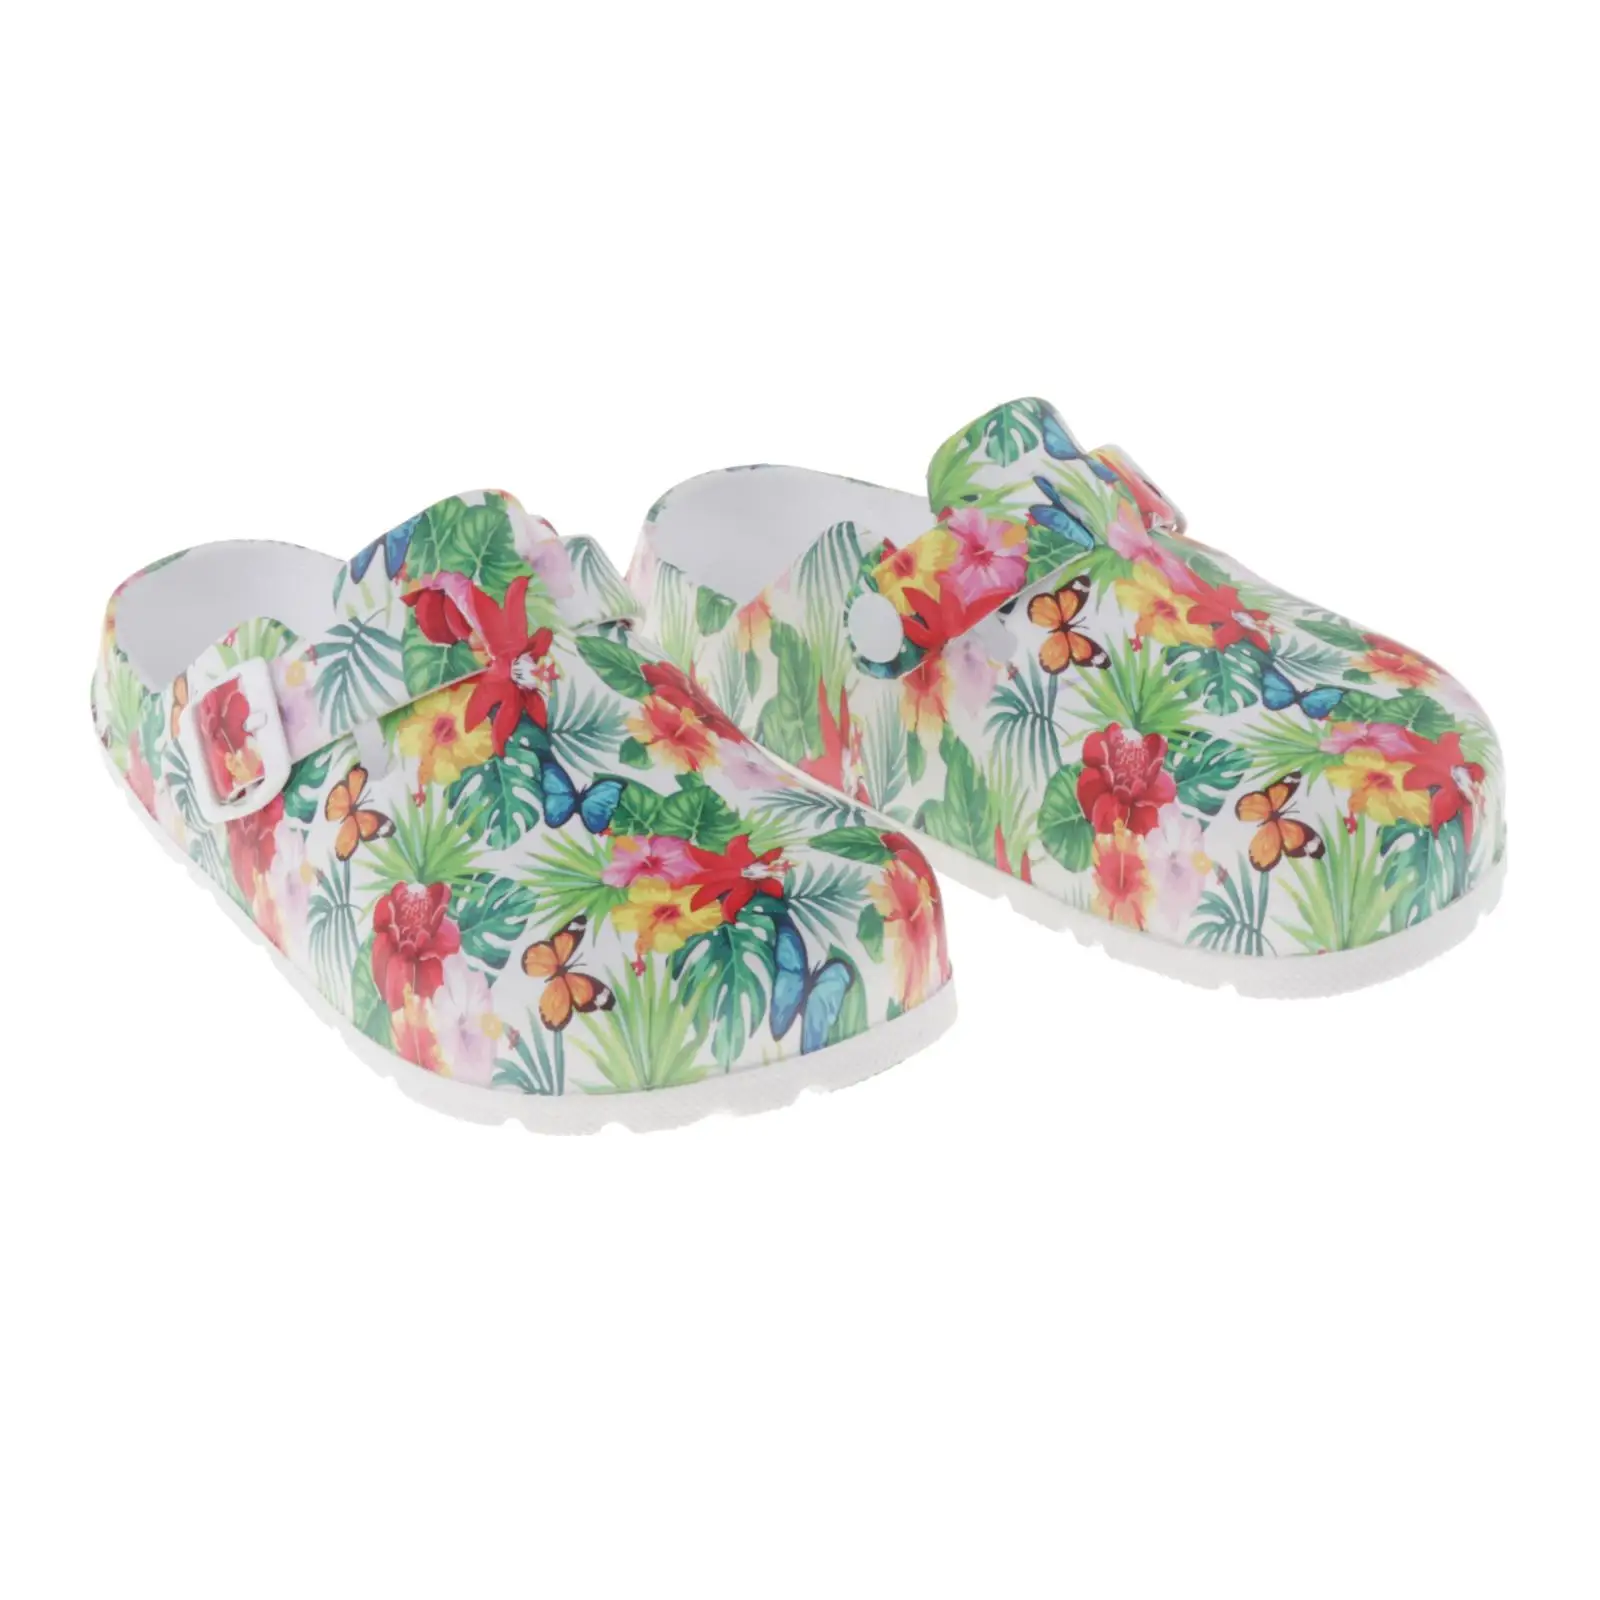 EVA Non-slip Nurse Shoes Clogs for Men Women Sandals Casual Beach Shoes Floral Waterproof SPA Beauty Salon Shoe Work Clogs